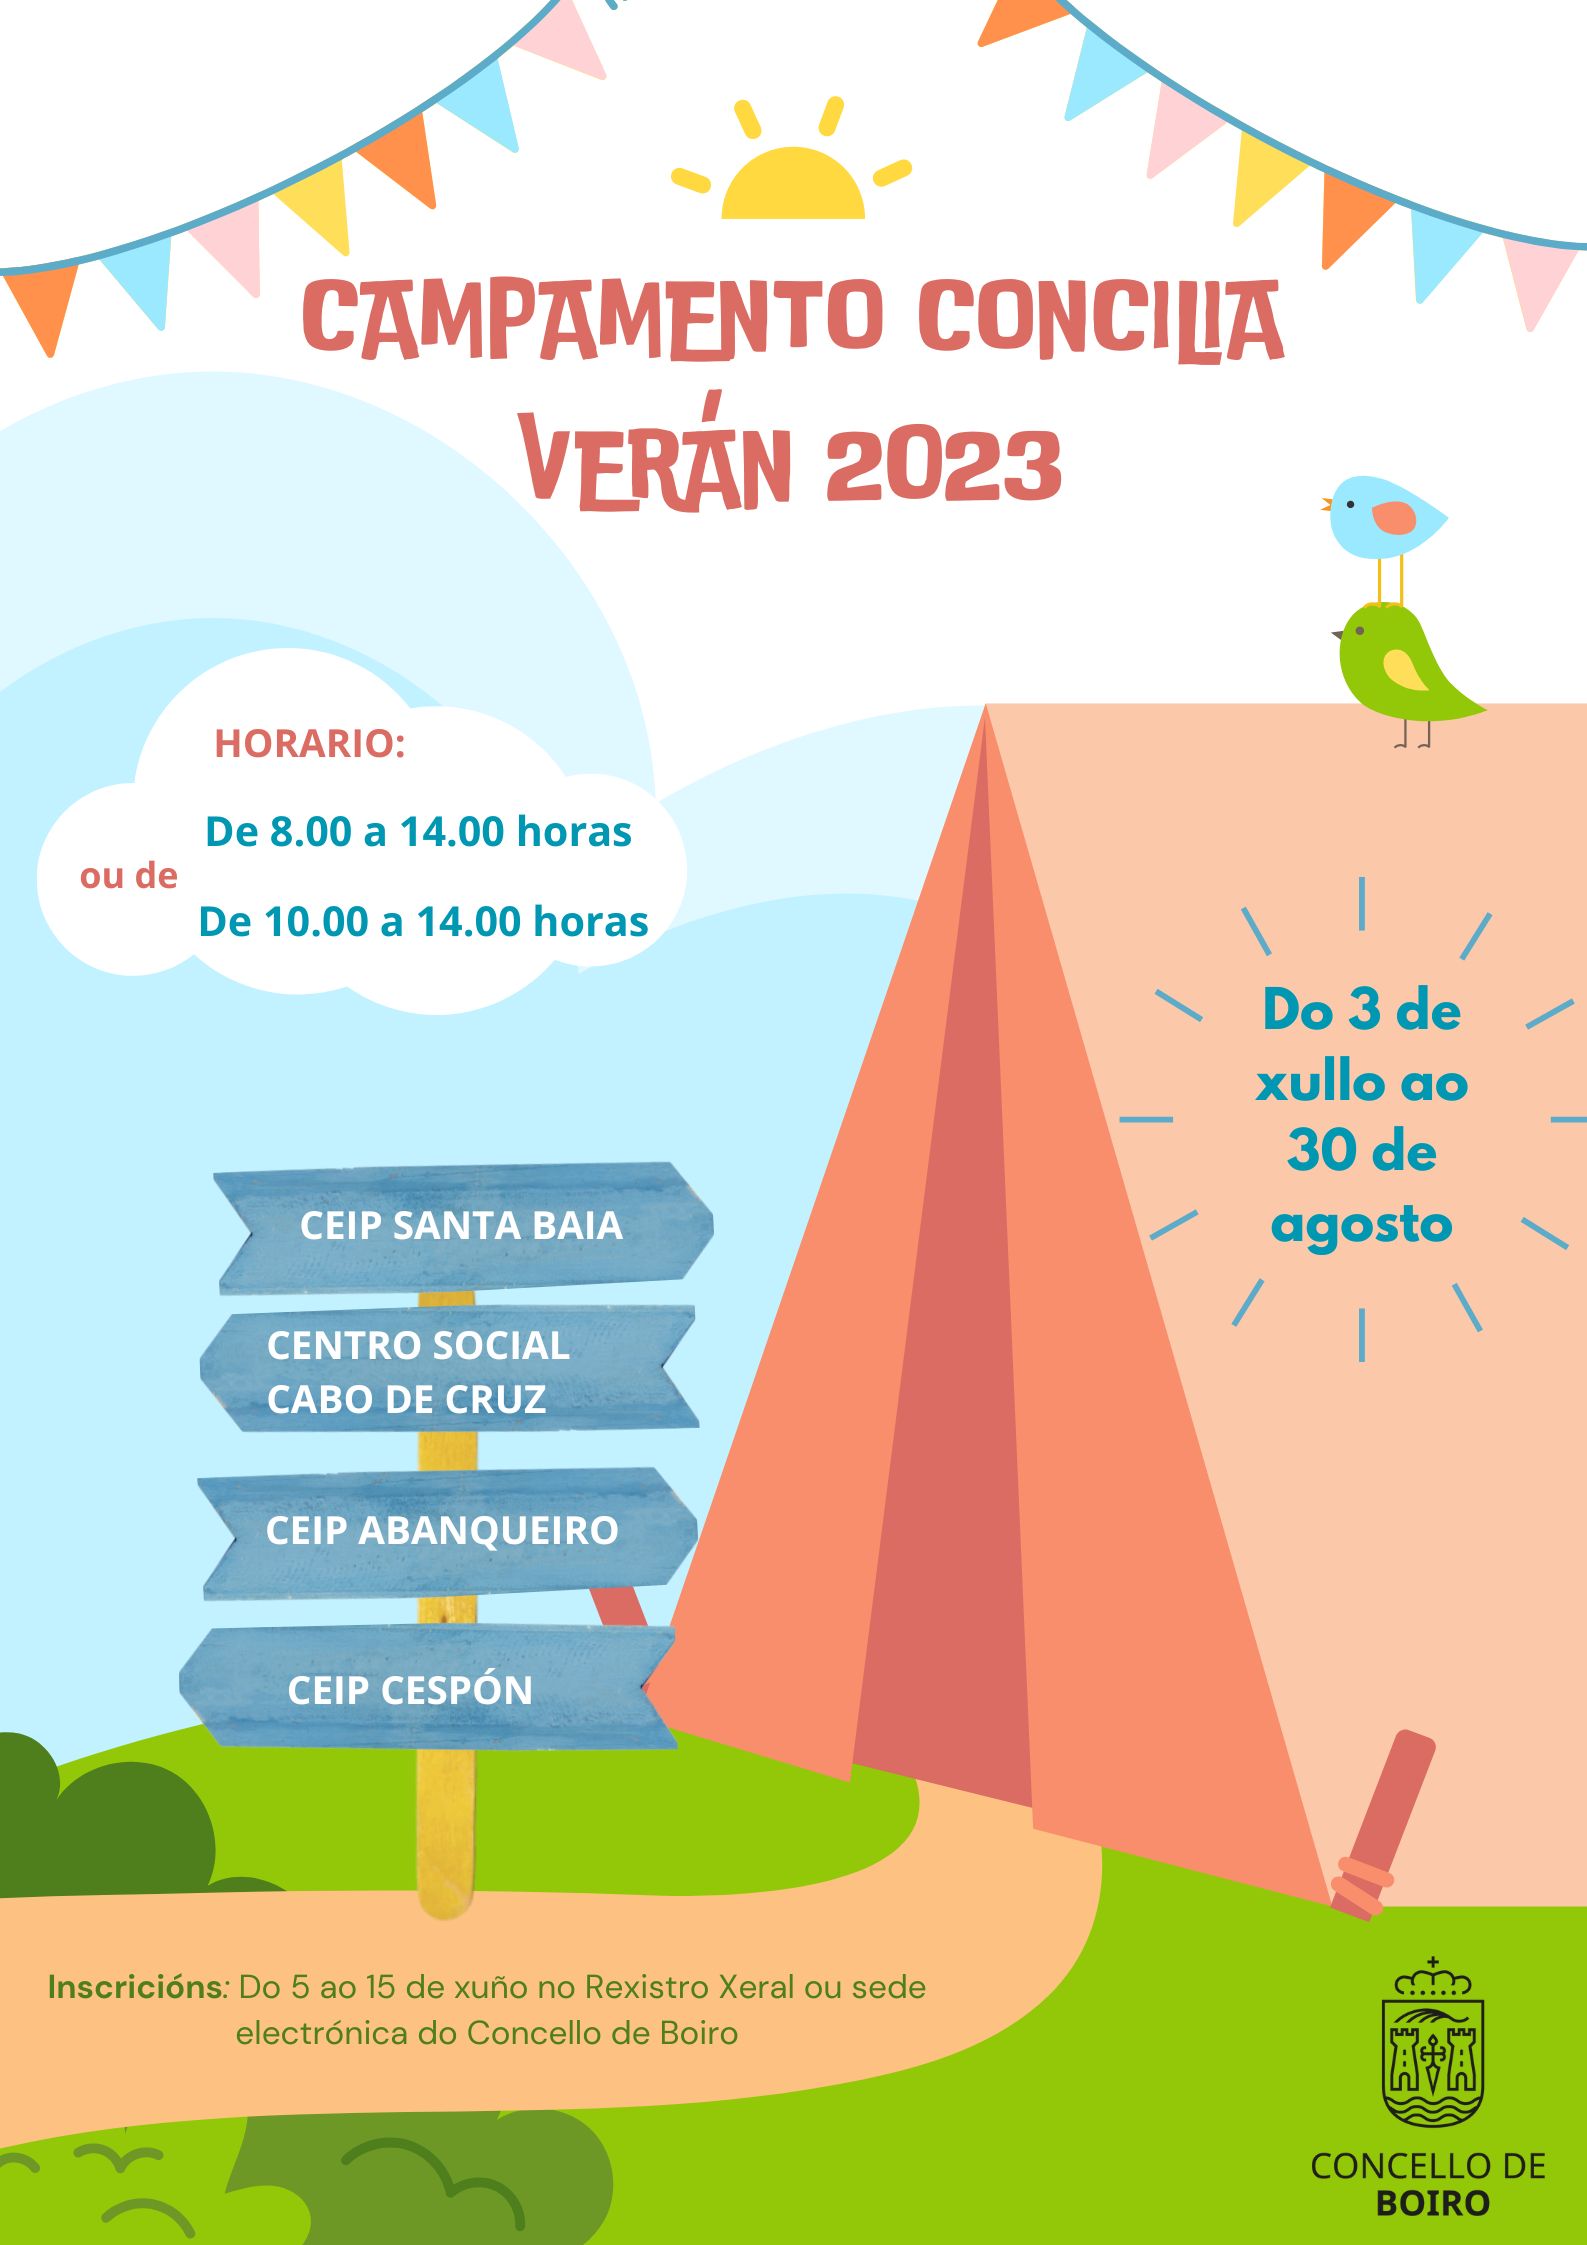 Campamento concilia verán 2023 | Concello de Boiro 